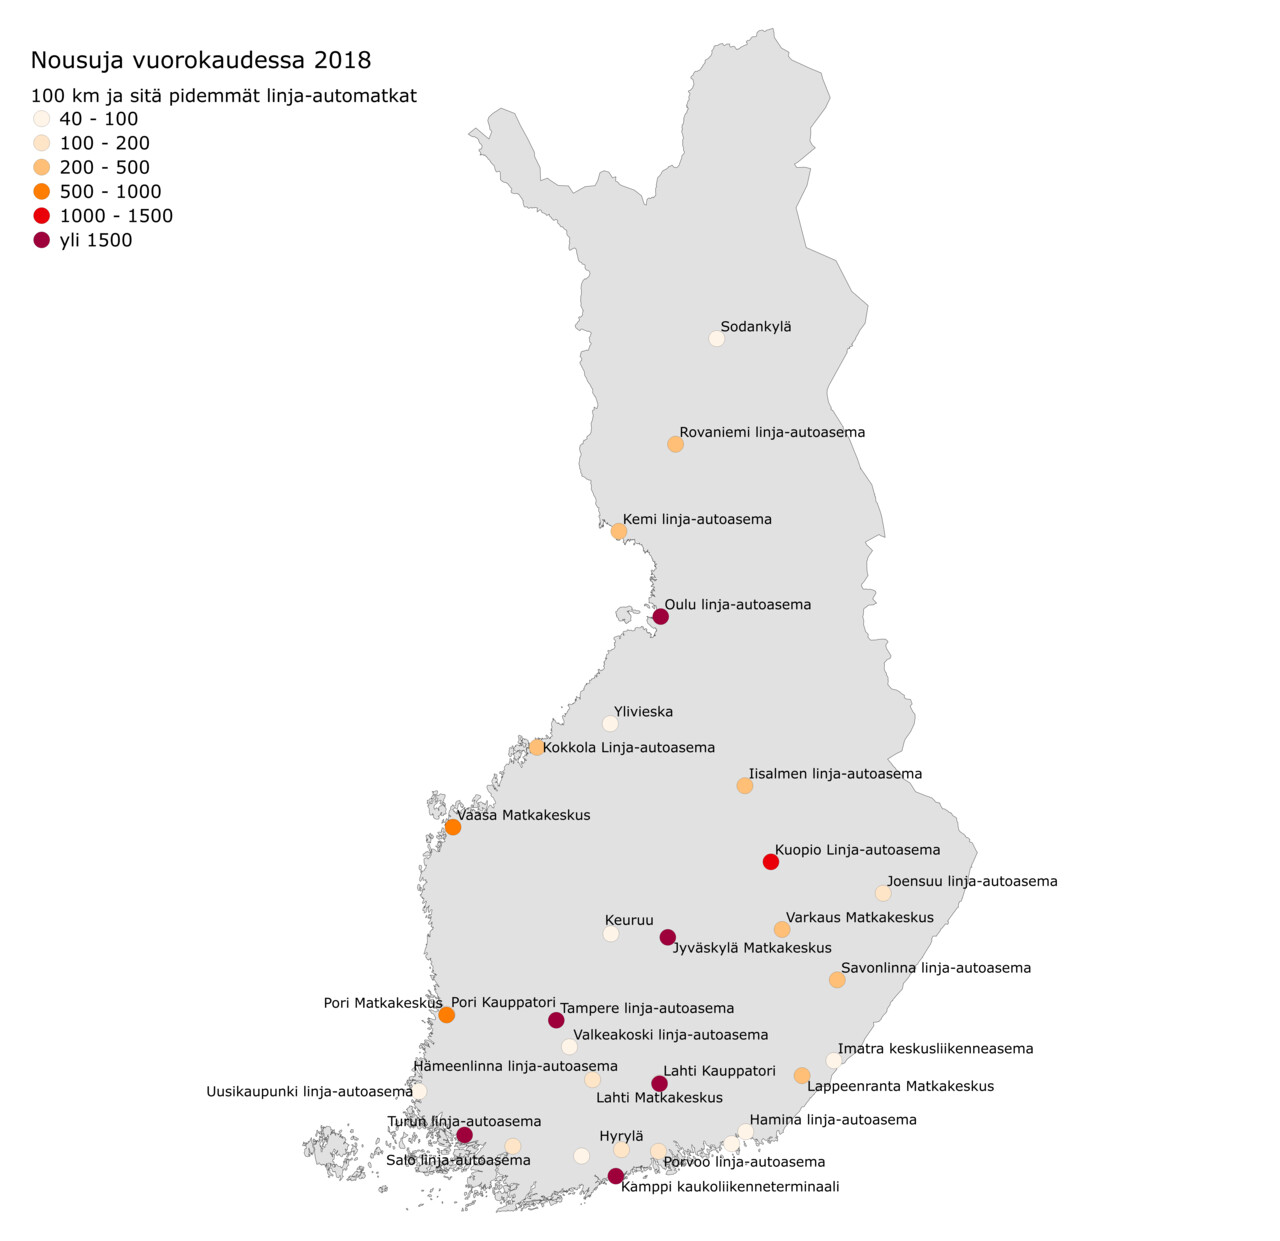 Suomen kartalla tärkeimmät pitkämaisen linja-autoliikenteen solmukaupungit vuoden 2018 linjastolla